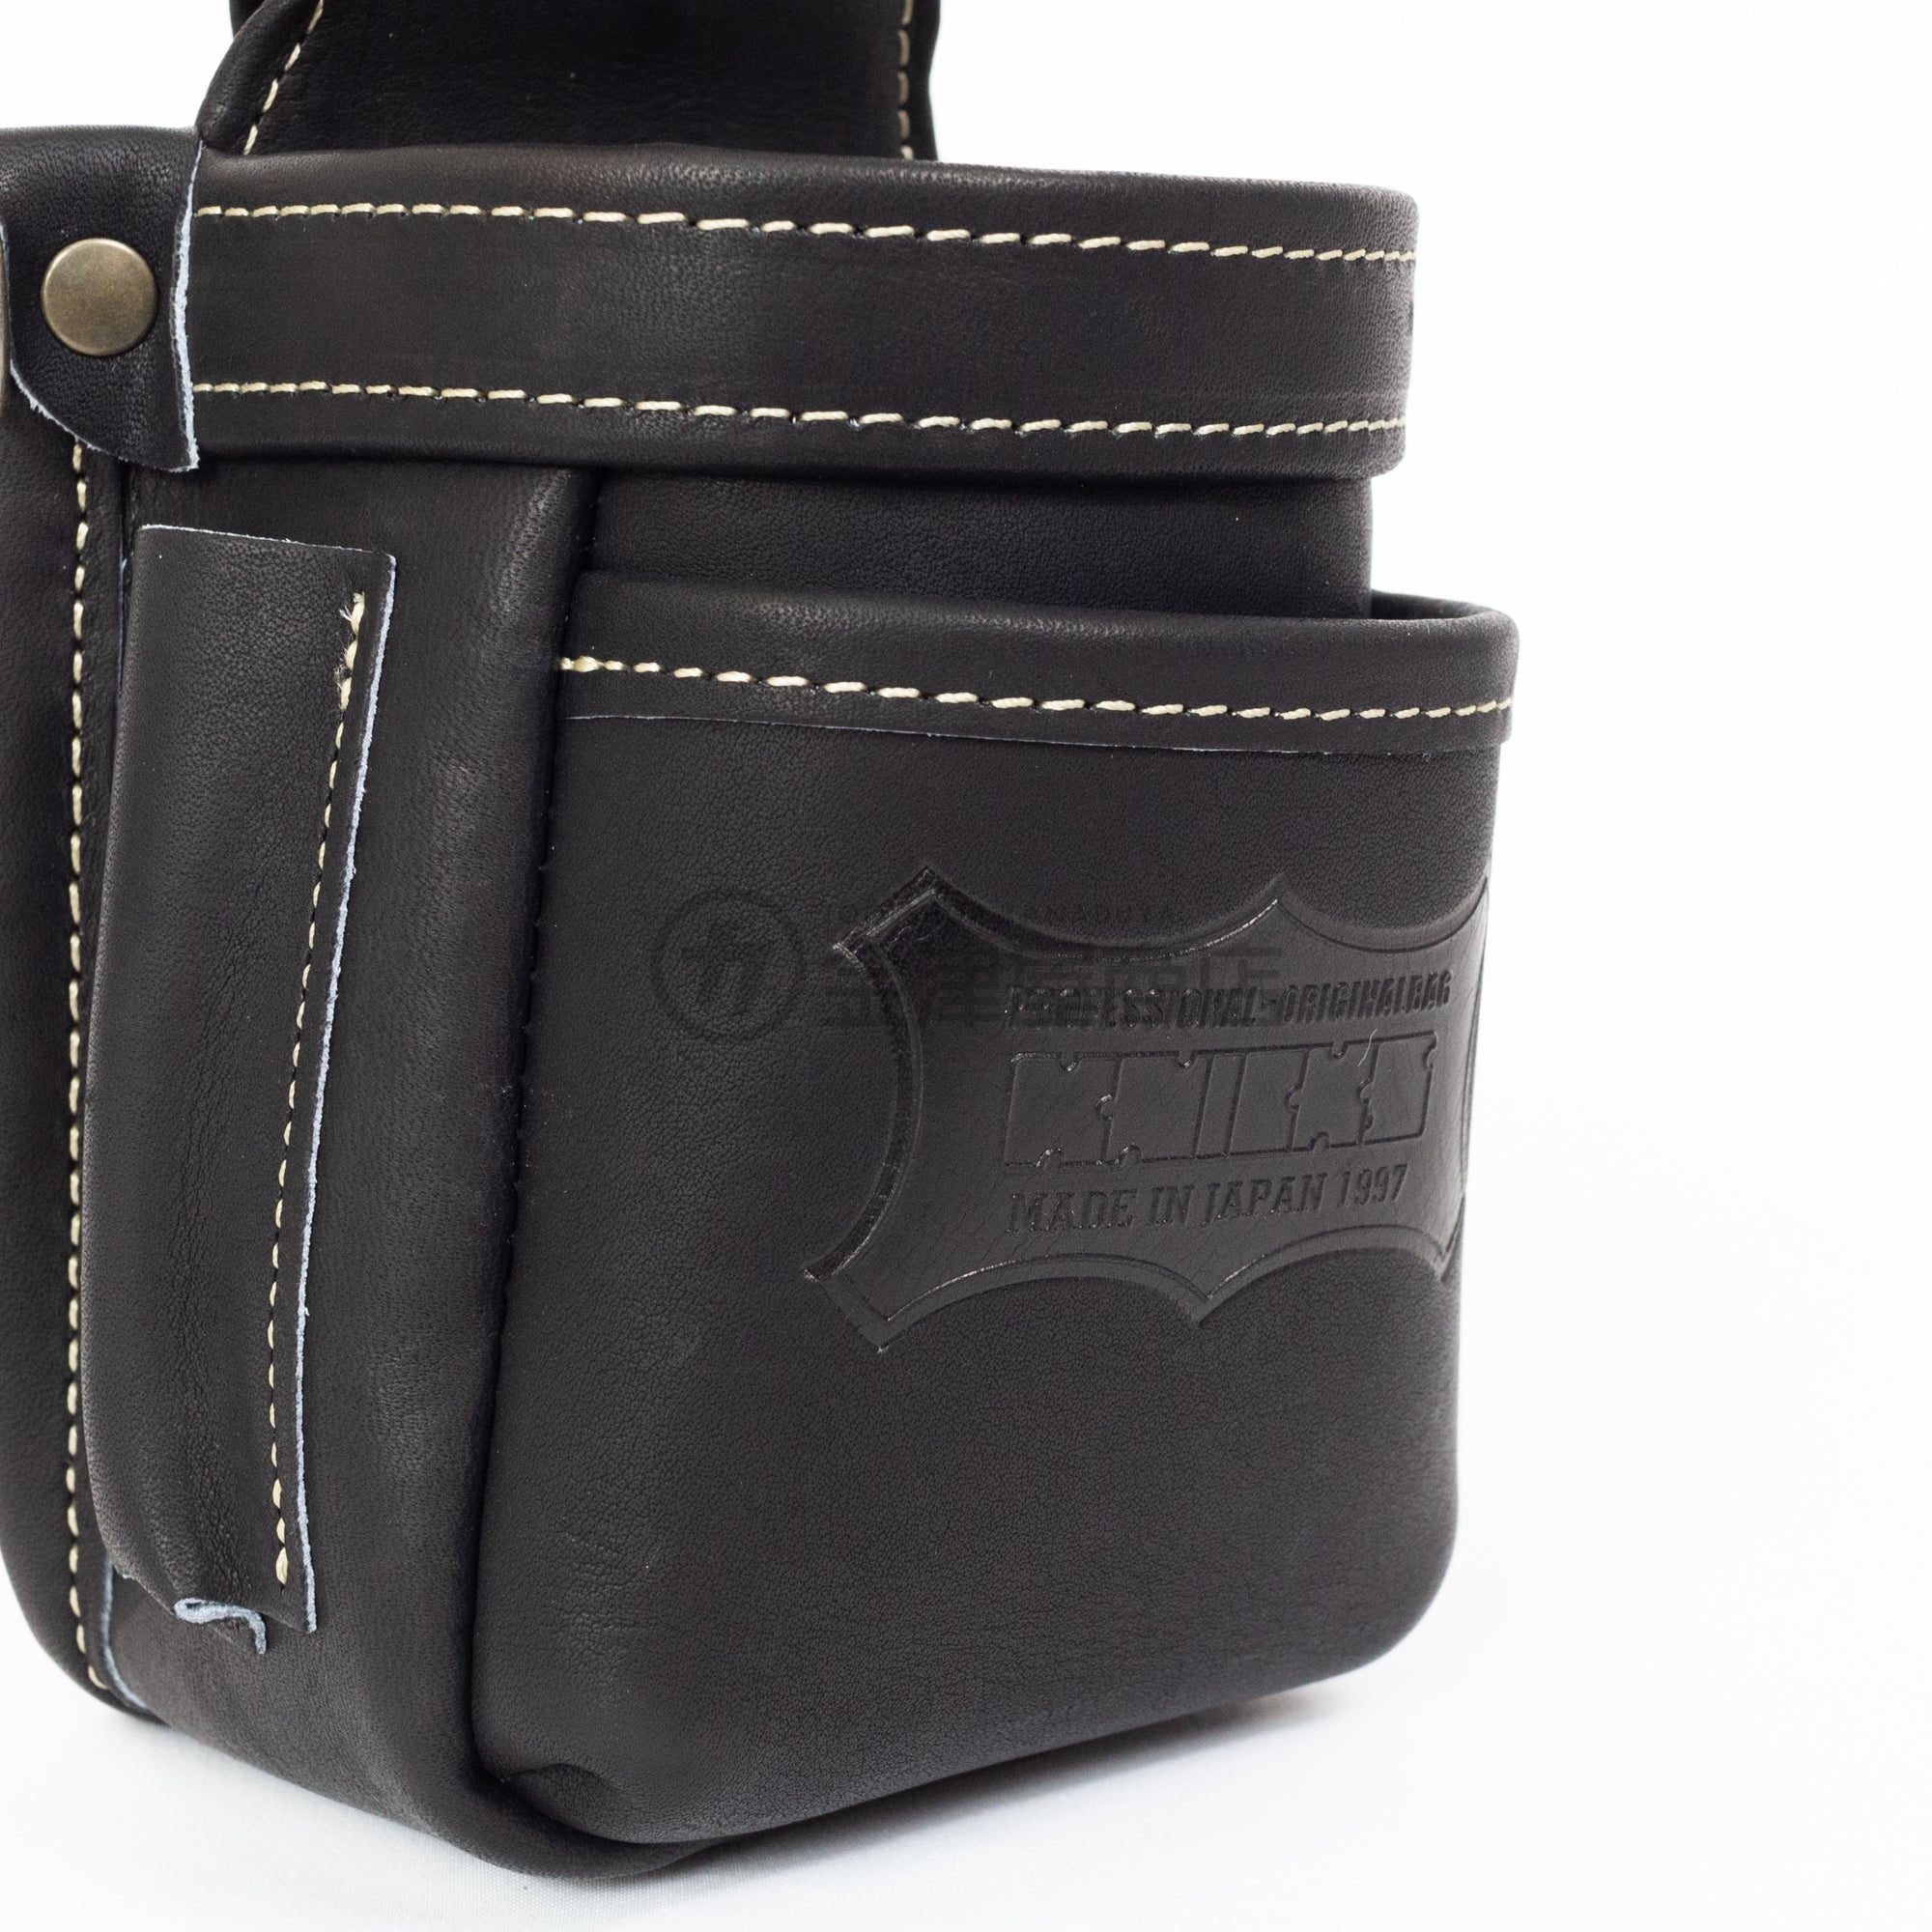 ニックス(KNICKS) 最高級硬式グローブ革小物腰袋 チェーンタイプ ブラック KGB-201VADX – 金津屋商店